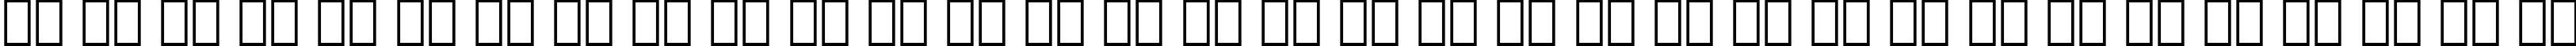 Пример написания русского алфавита шрифтом Schadow Black BT